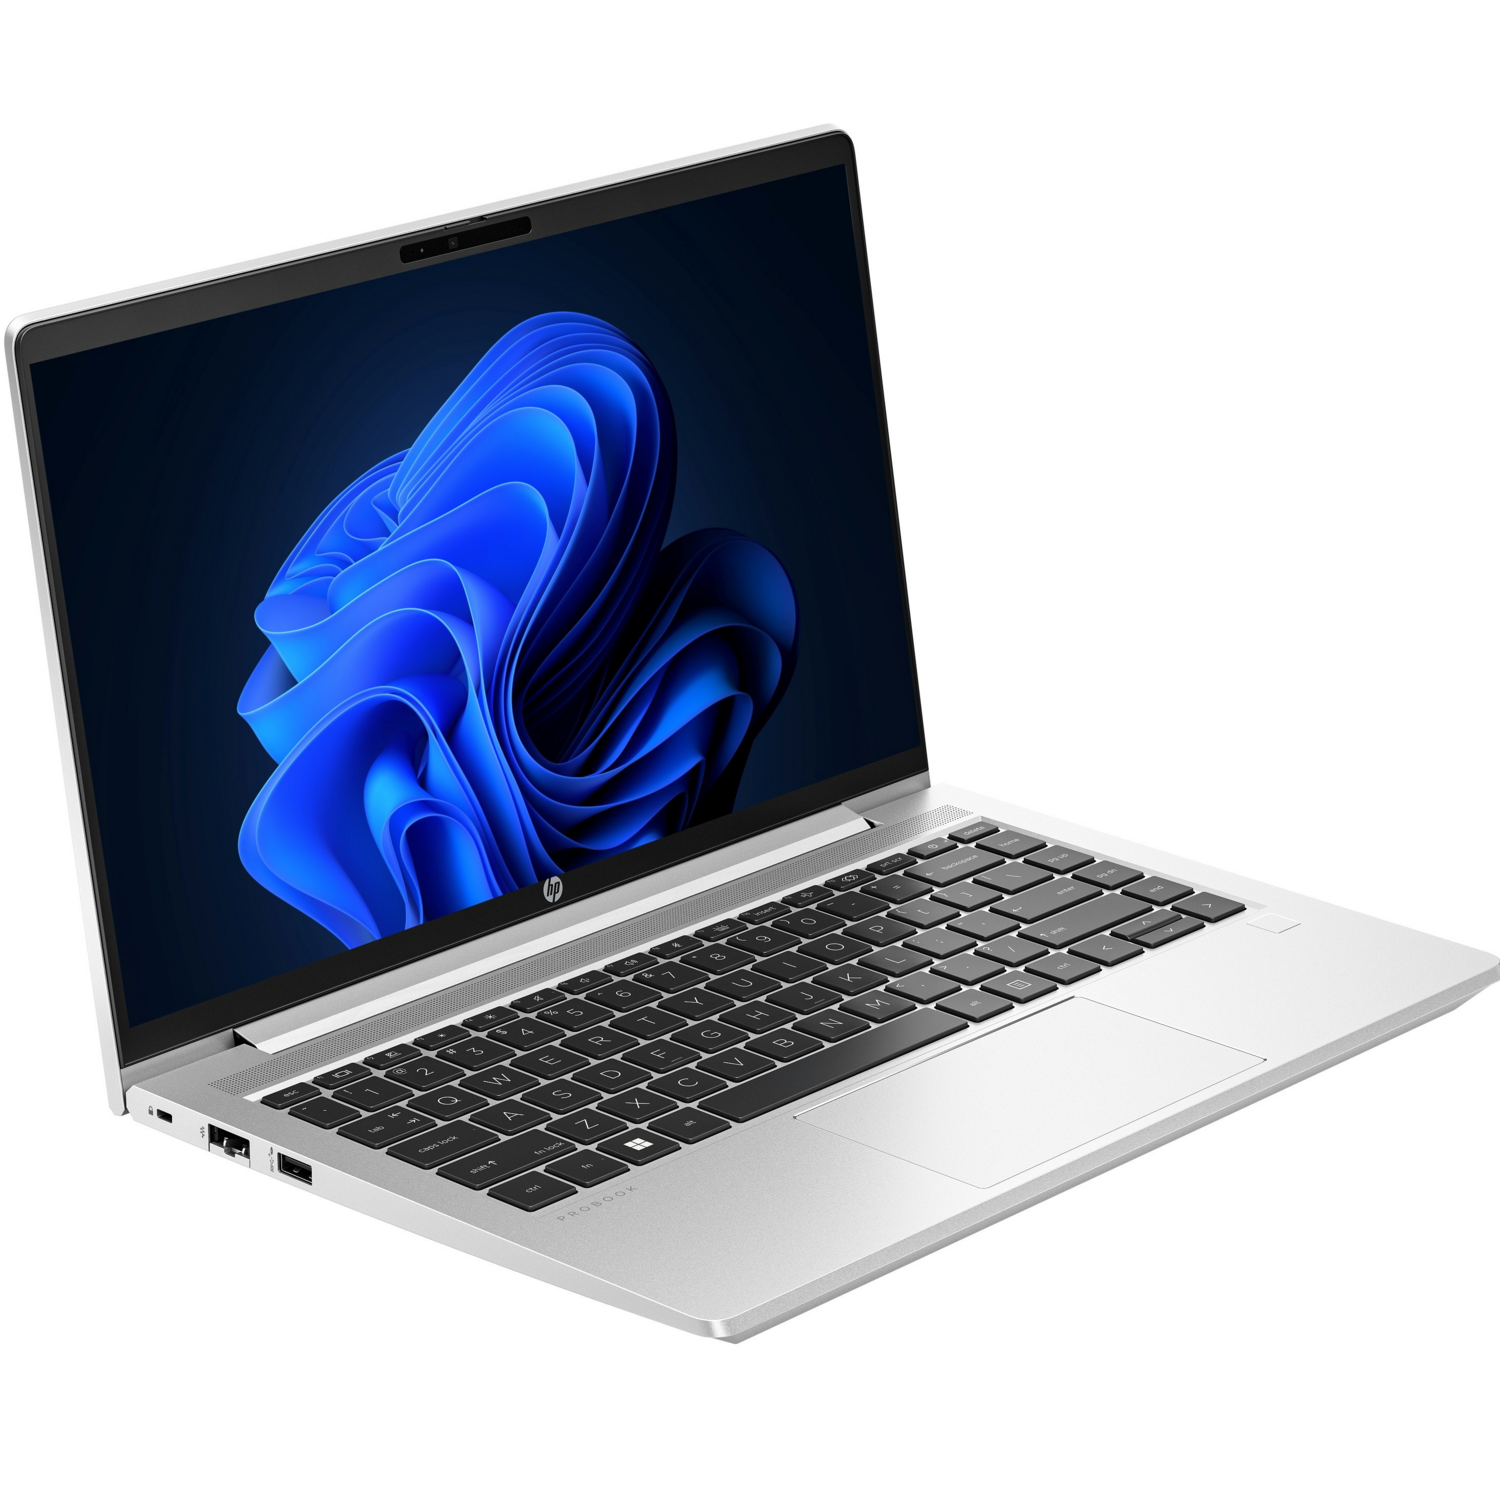 Ноутбук HP Probook 445-g10 (85c00ea)фото